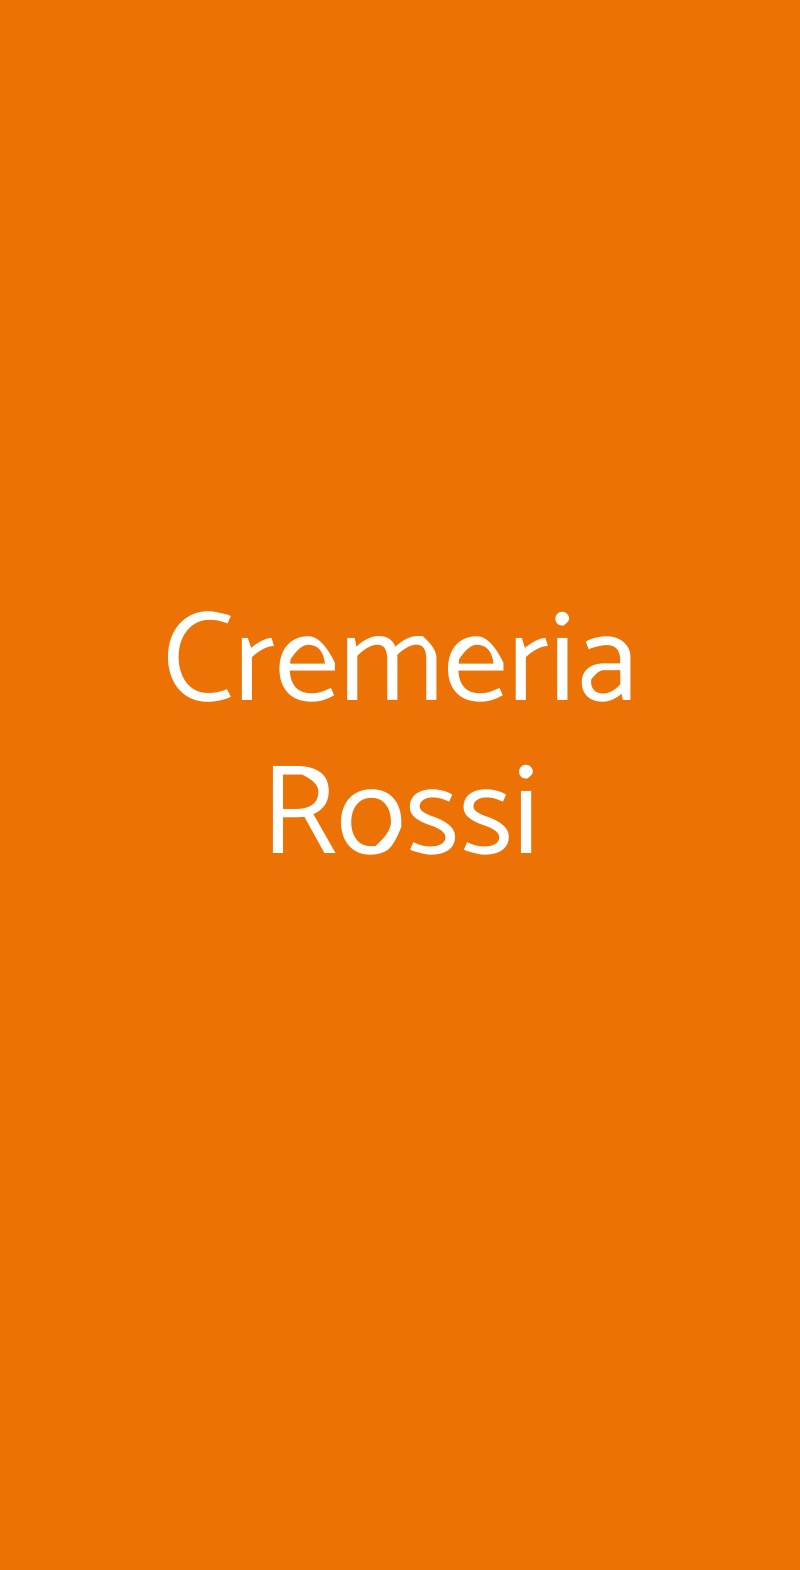 Cremeria Rossi Milano menù 1 pagina